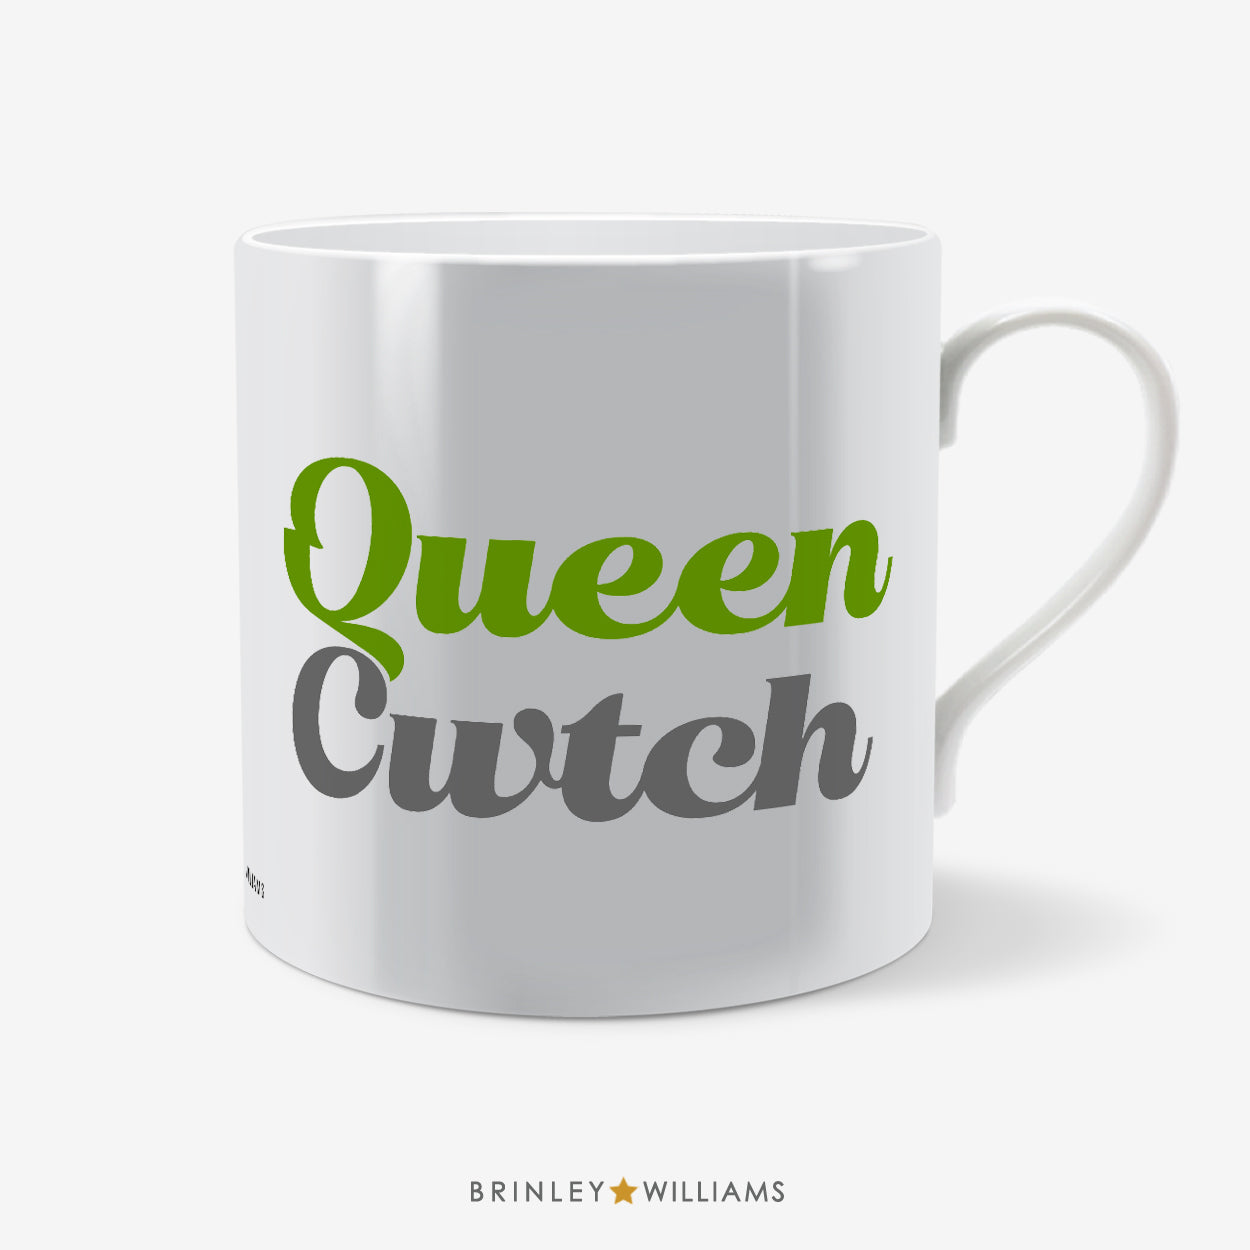 Queen Cwtch Welsh Mug - Green